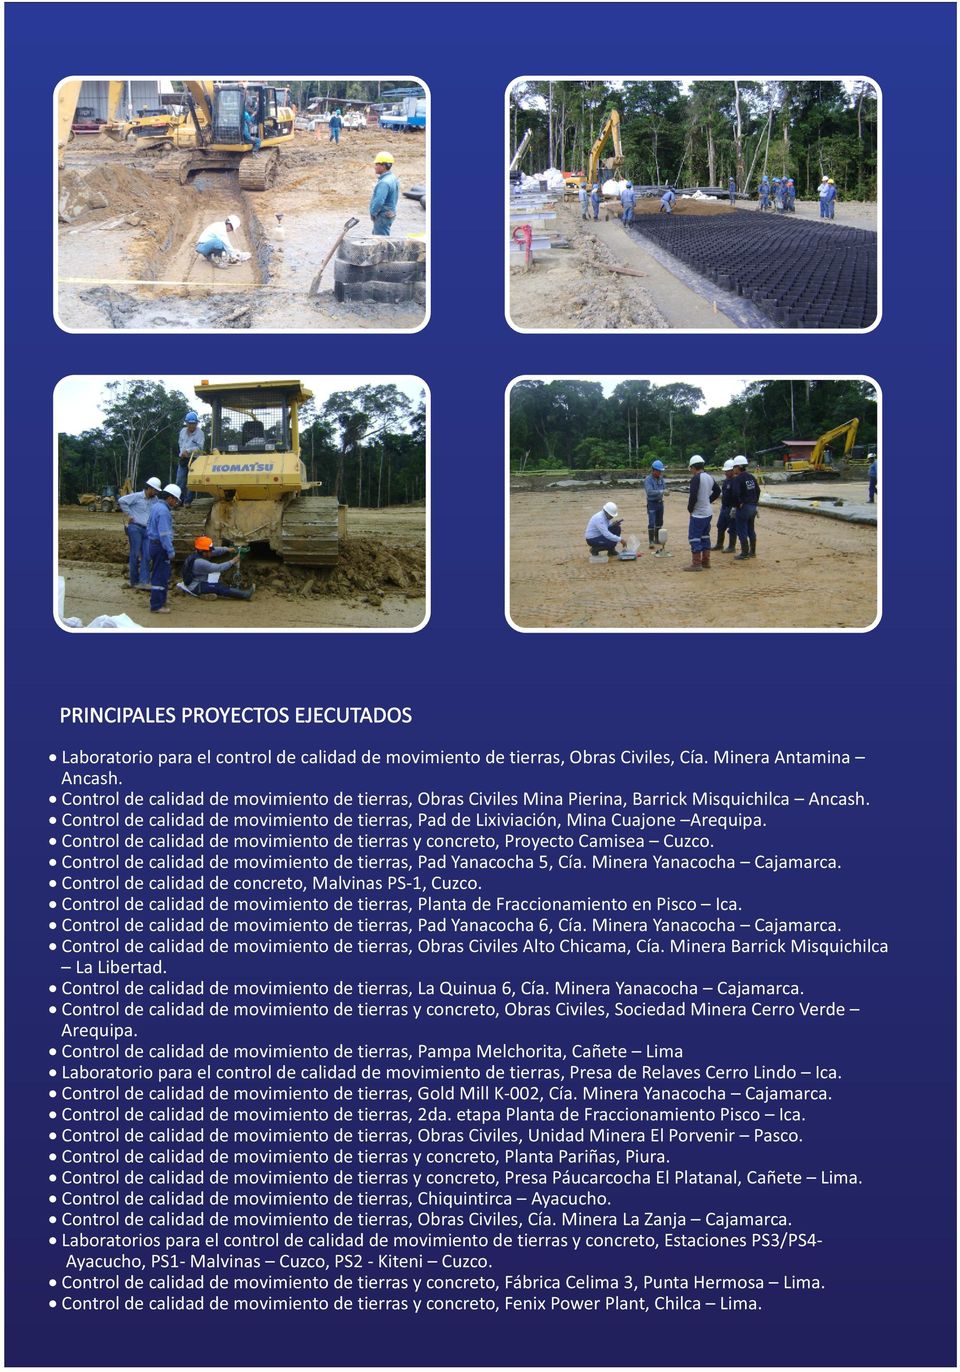 Control de calidad de movimiento de tierras y concreto, Proyecto Camisea Cuzco. Control de calidad de movimiento de tierras, Pad Yanacocha 5, Cía. Minera Yanacocha Cajamarca.